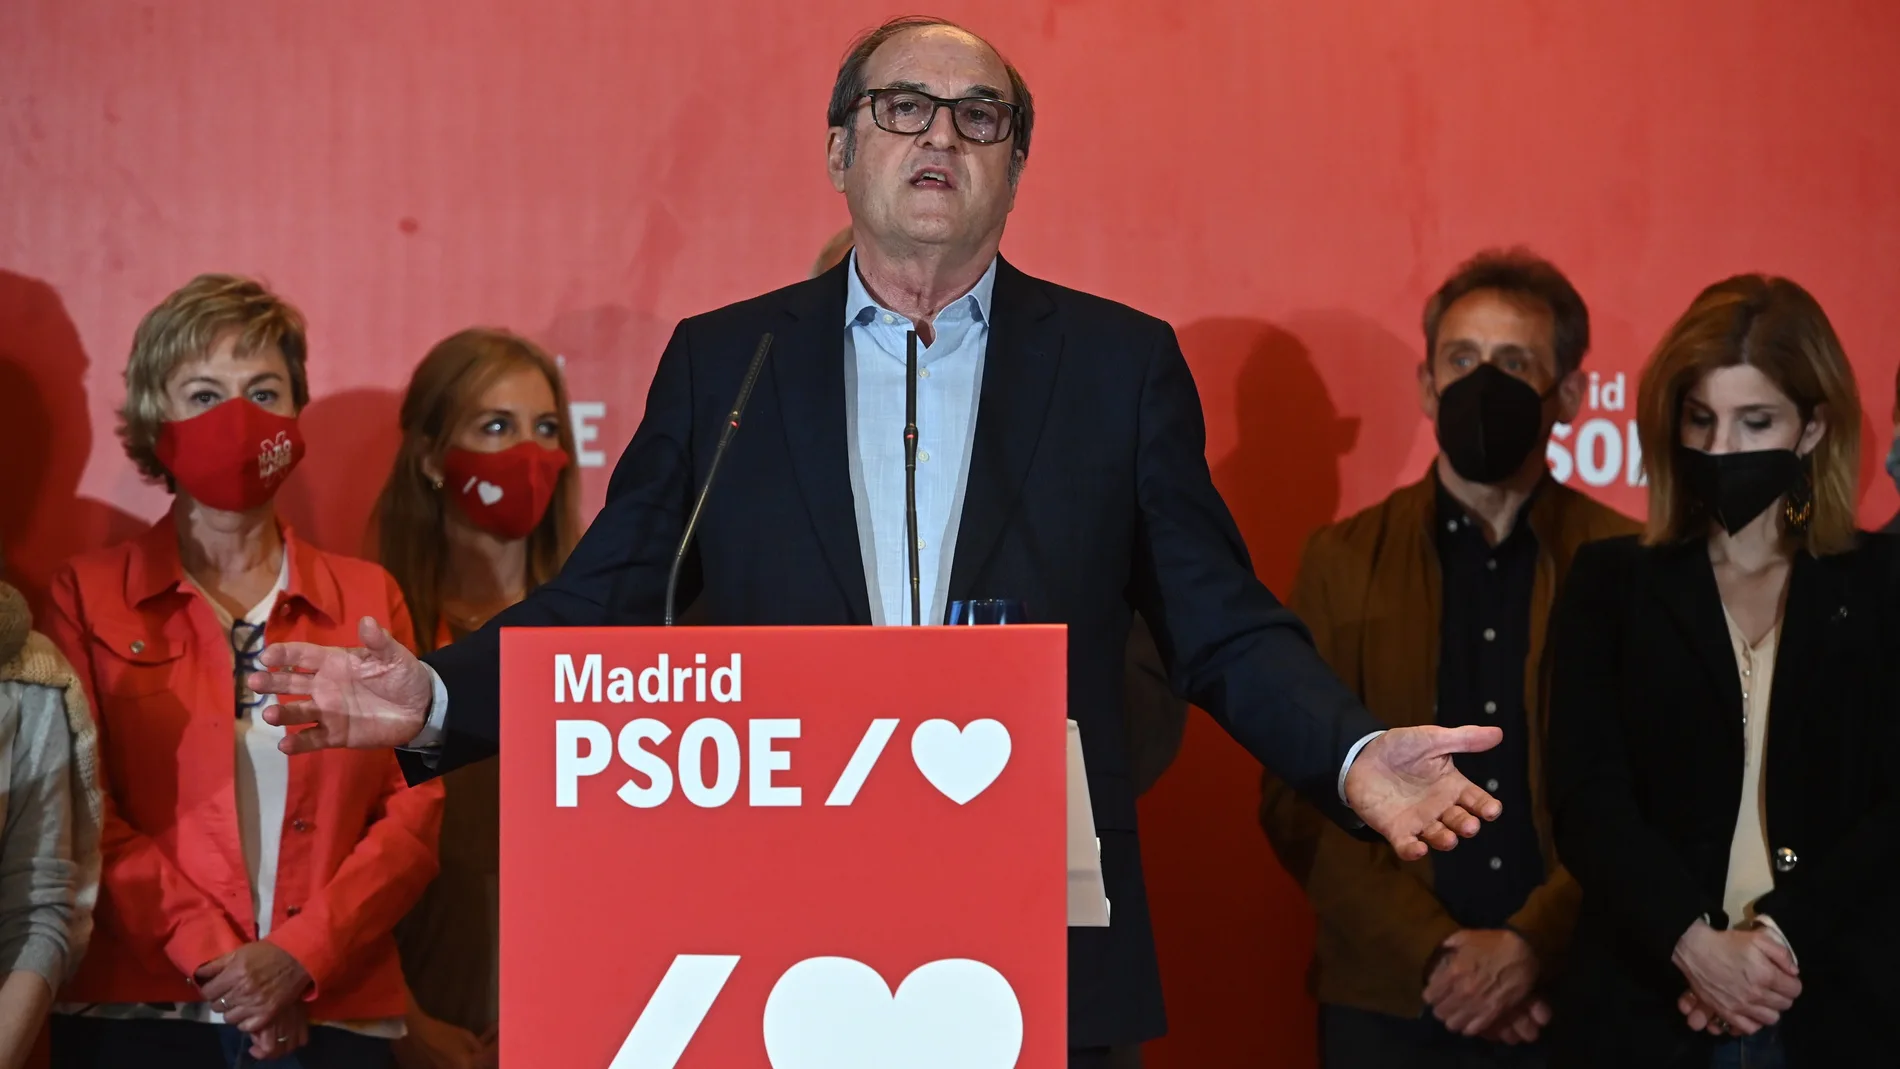 El candidato del PSOE a la presidencia de la Comunidad de Madrid, Ángel Gabilondo, la noche del 4-M